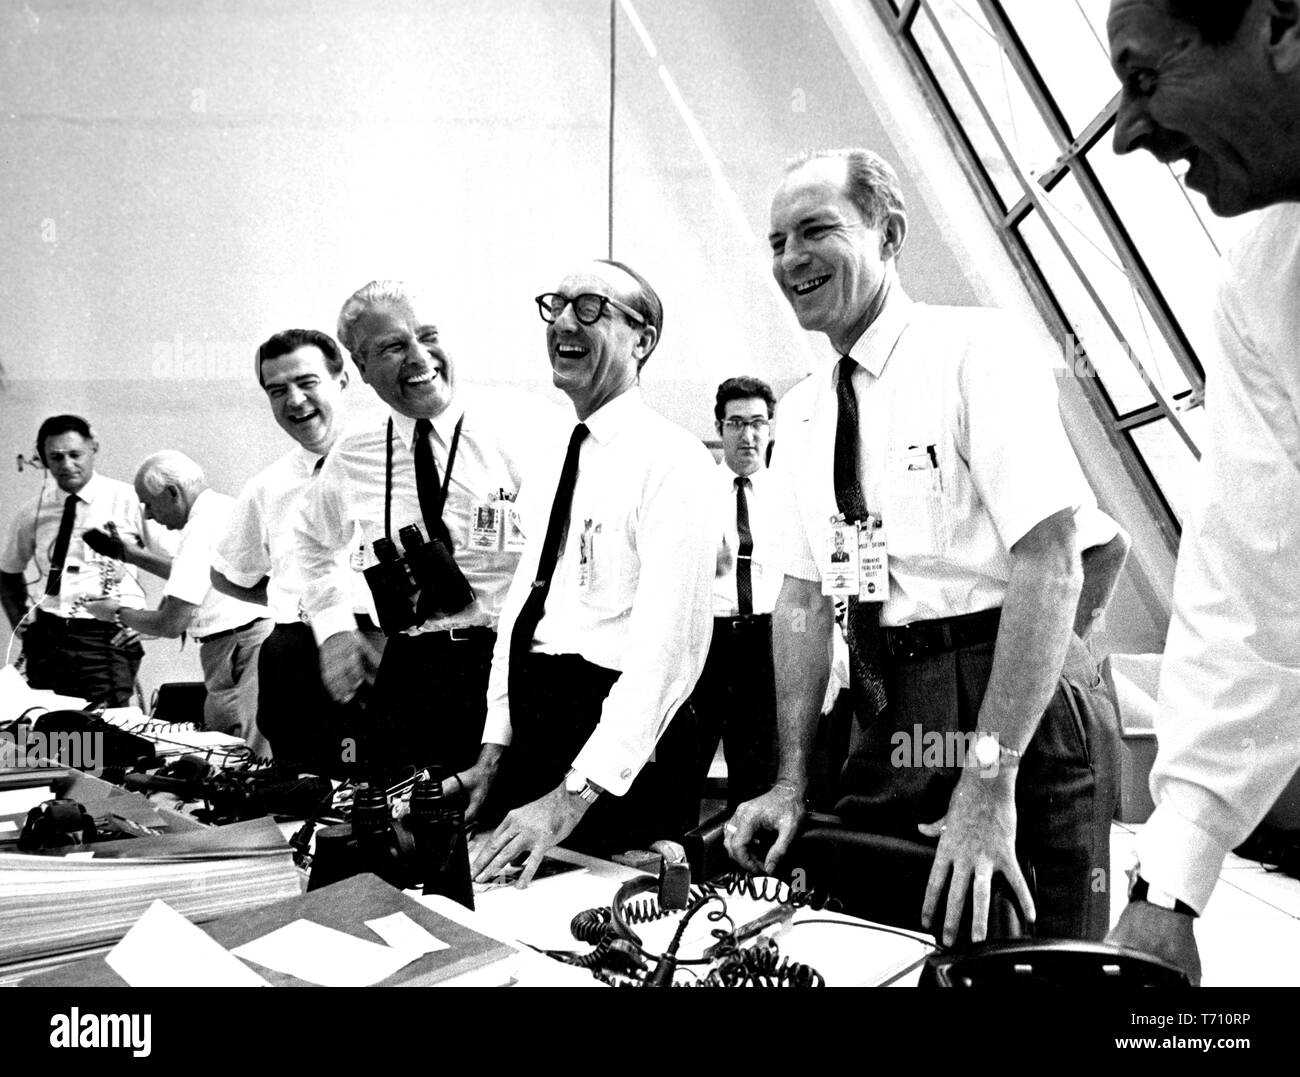 Missione Apollo 11 funzionari rilassante nel lancio di centro di controllo presso il Kennedy Space Center sull'Isola Merritt, Florida, tra cui Charles W Mathews, dr. Wernher von Braun, George Mueller, e Samuele generale C Phillips, 16 luglio 1969. Immagine cortesia Nazionale Aeronautica e Spaziale Administration (NASA). () Foto Stock